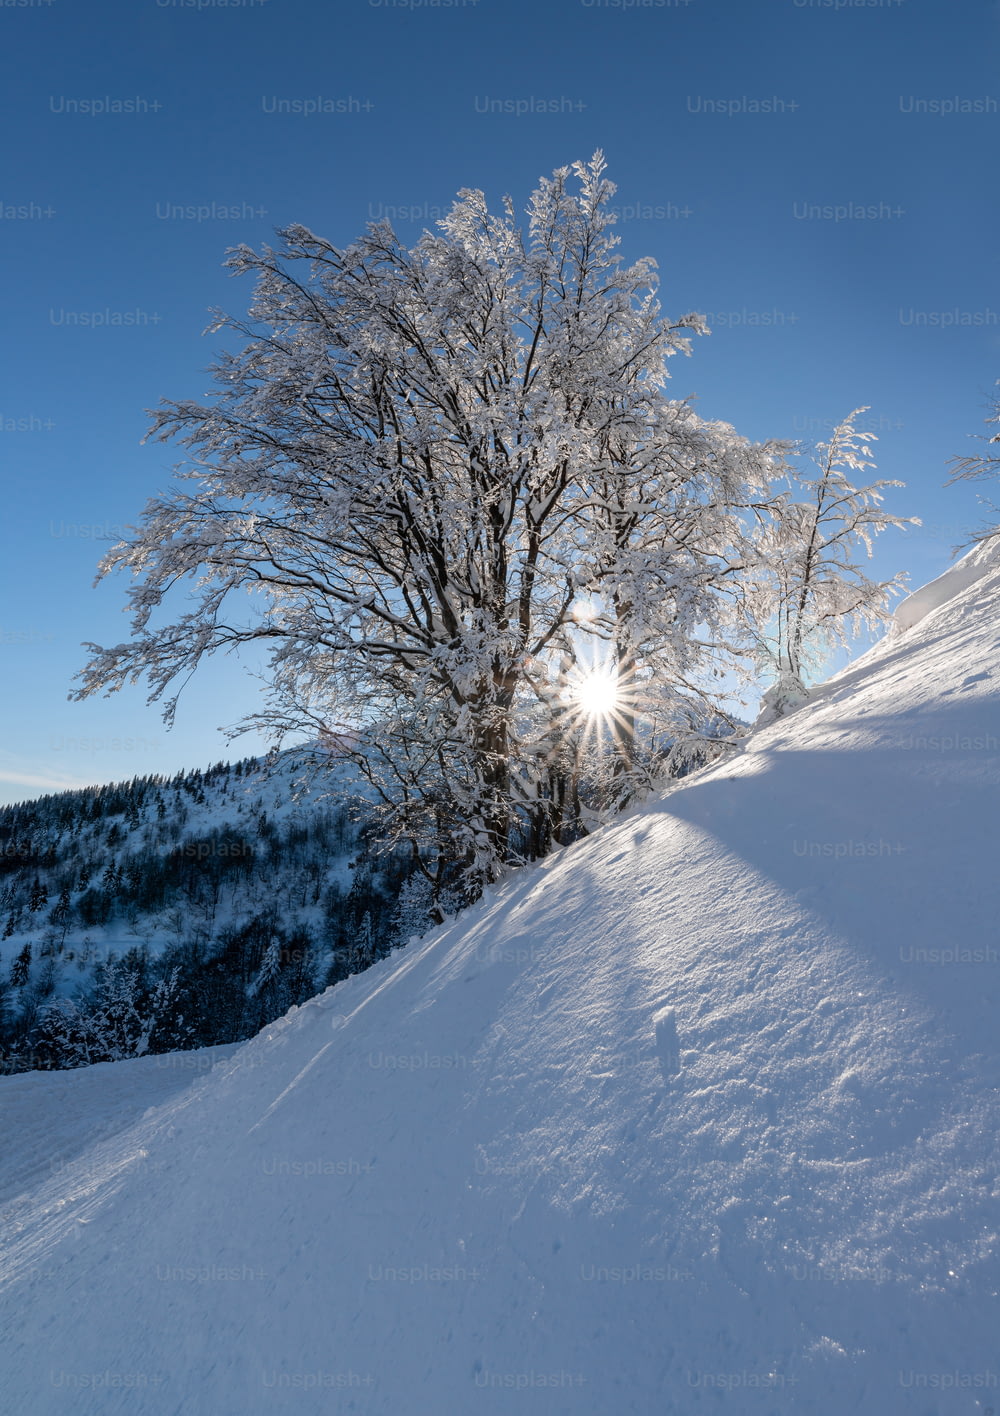 Il sole splende luminoso attraverso i rami di un albero nella neve